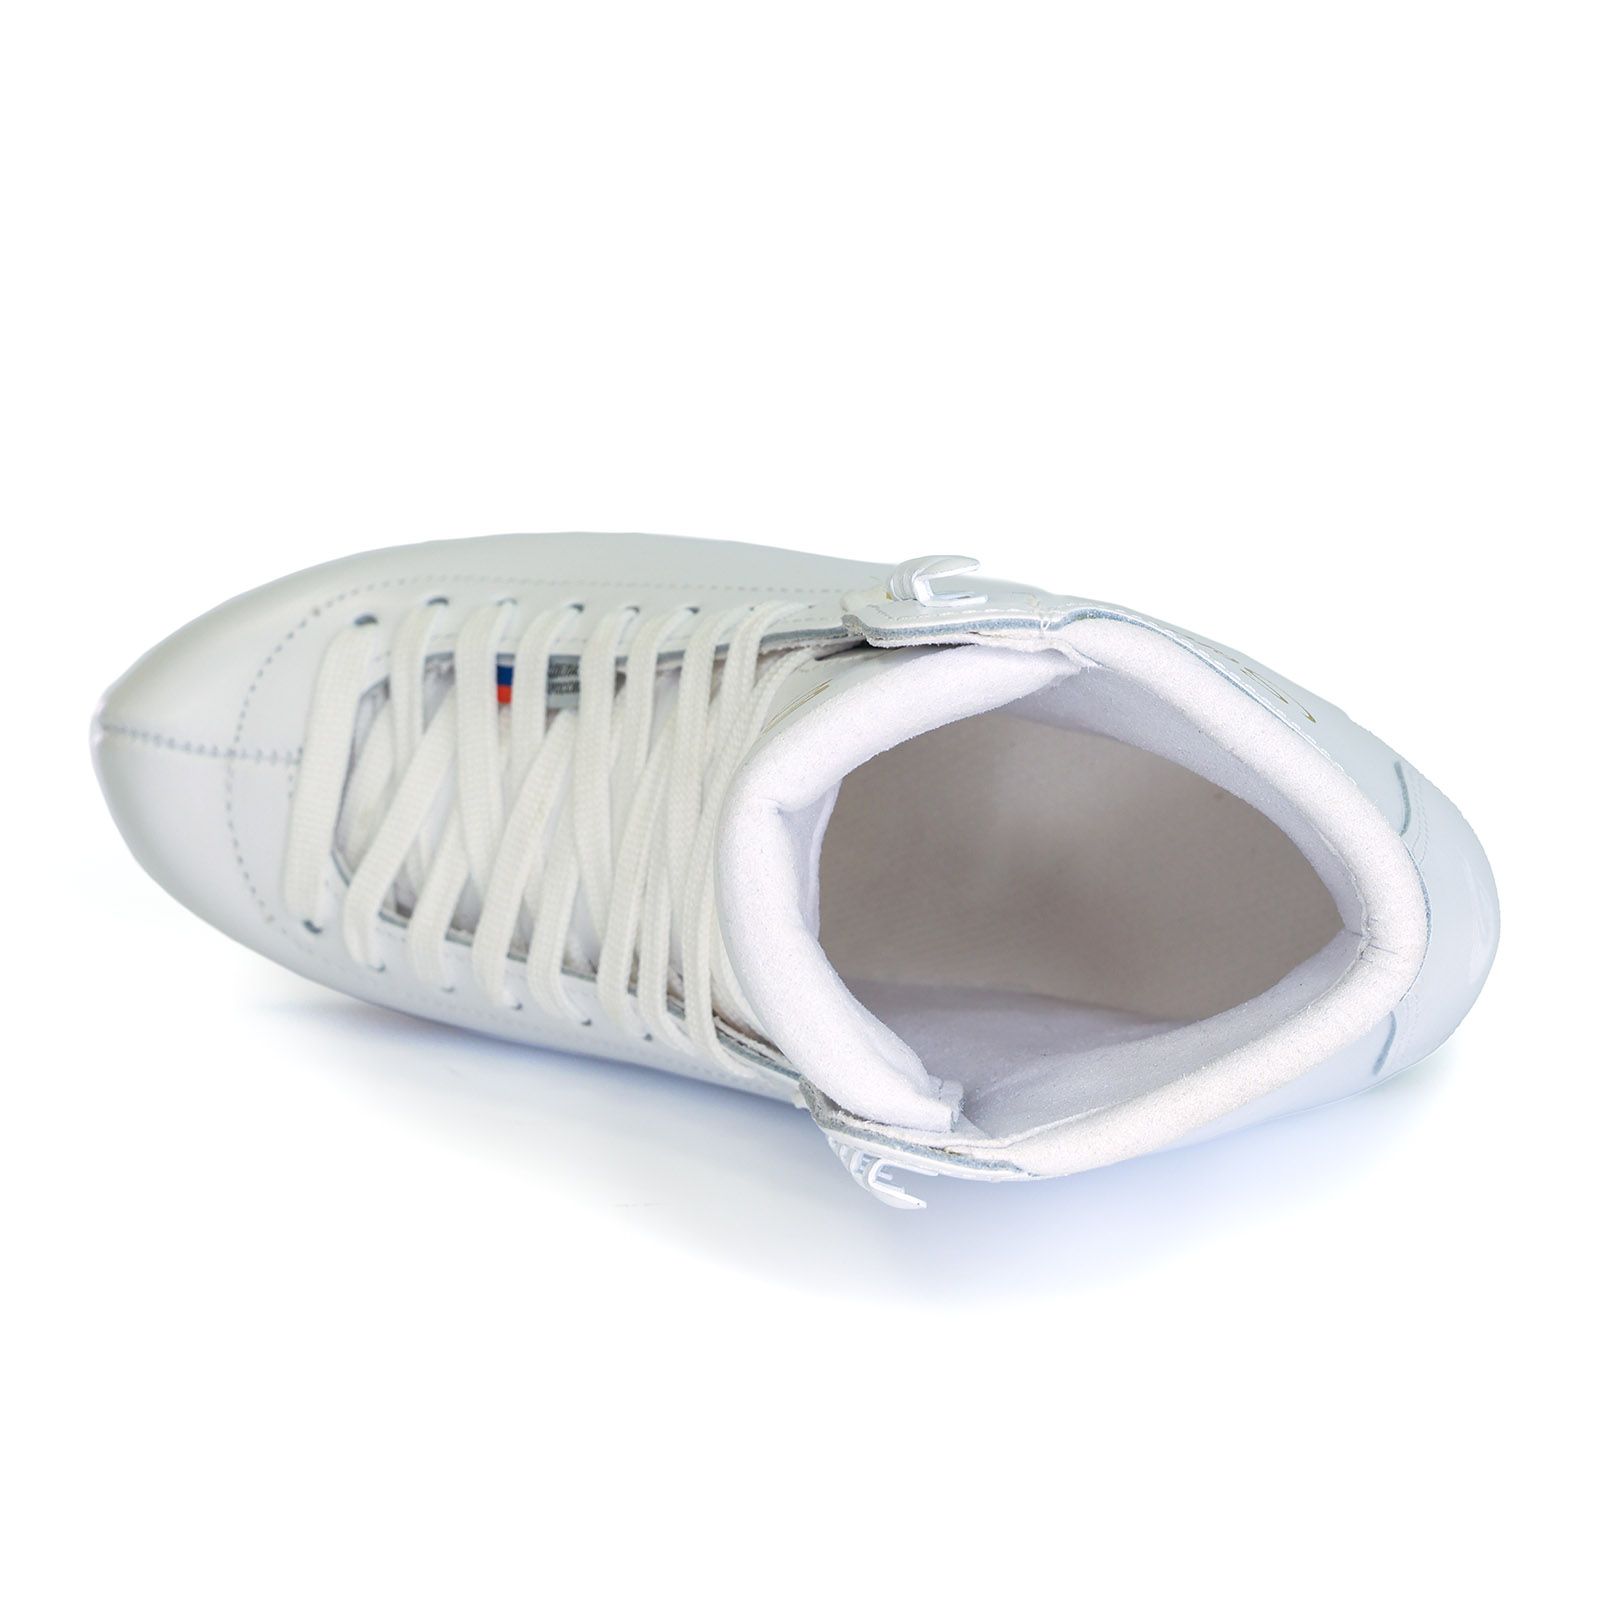 Фигурные ботинки GRAF Sonata детские (Белые)